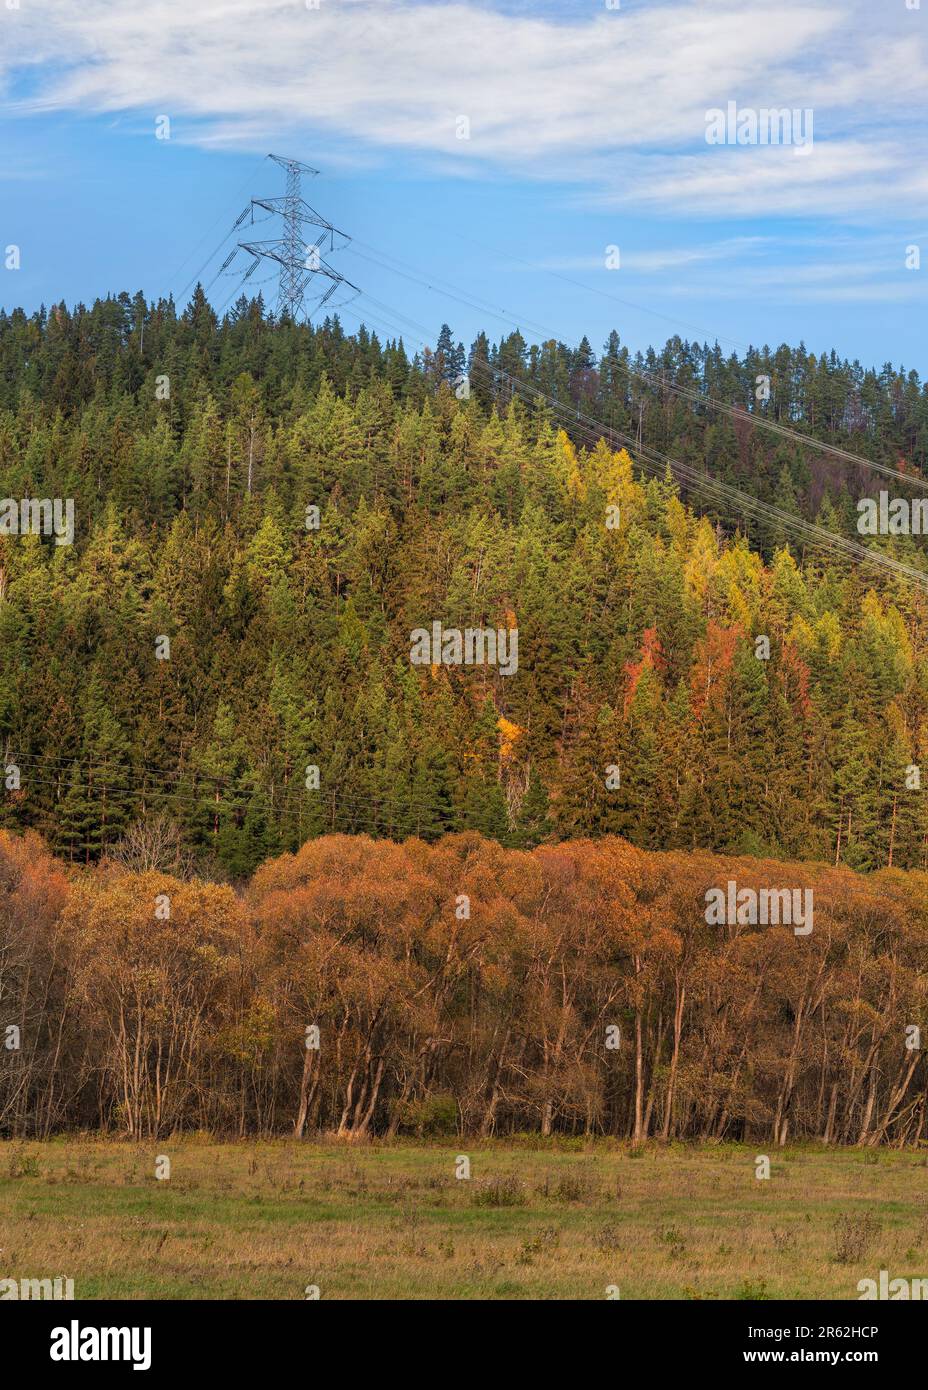 Großer metallischer Kraftpylon unter Stromleitungen, auf dem Land gebaut mit Herbstgras und waldbedeckten Hügeln, blauer Himmel Hintergrund Stockfoto